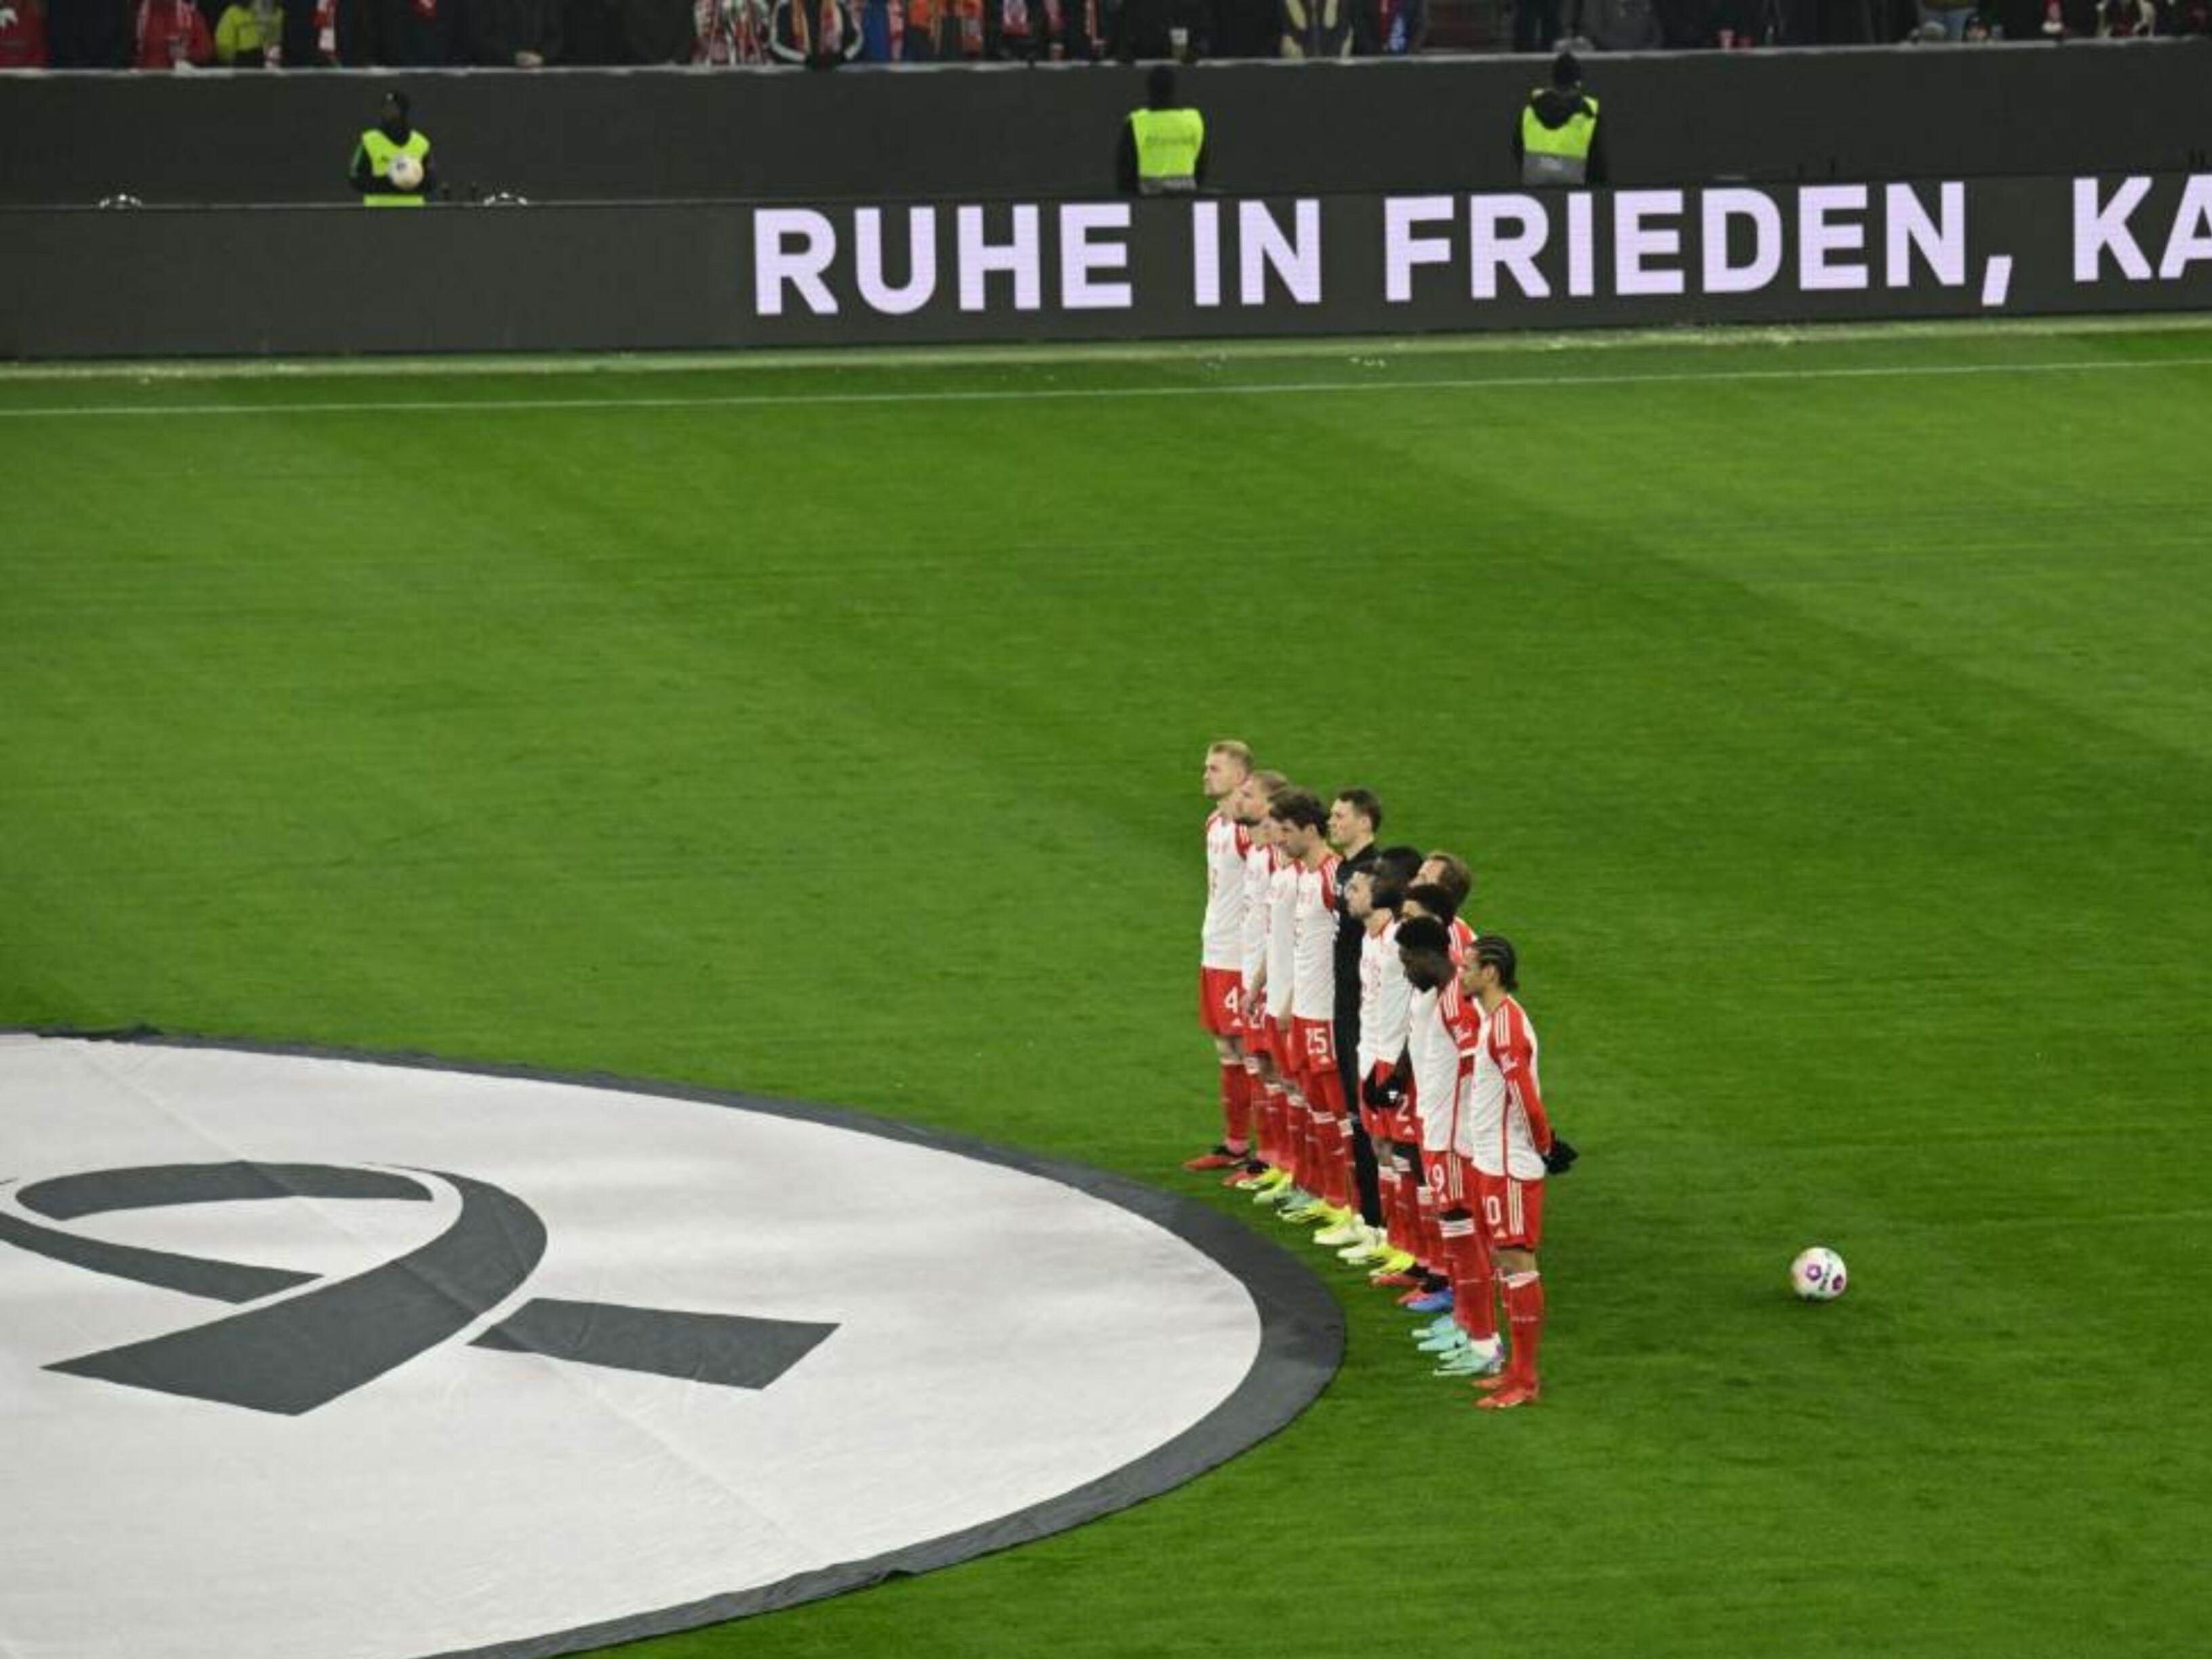 Emotivo homenaje de despedida del Bayern Múnich a Franz Beckenbauer